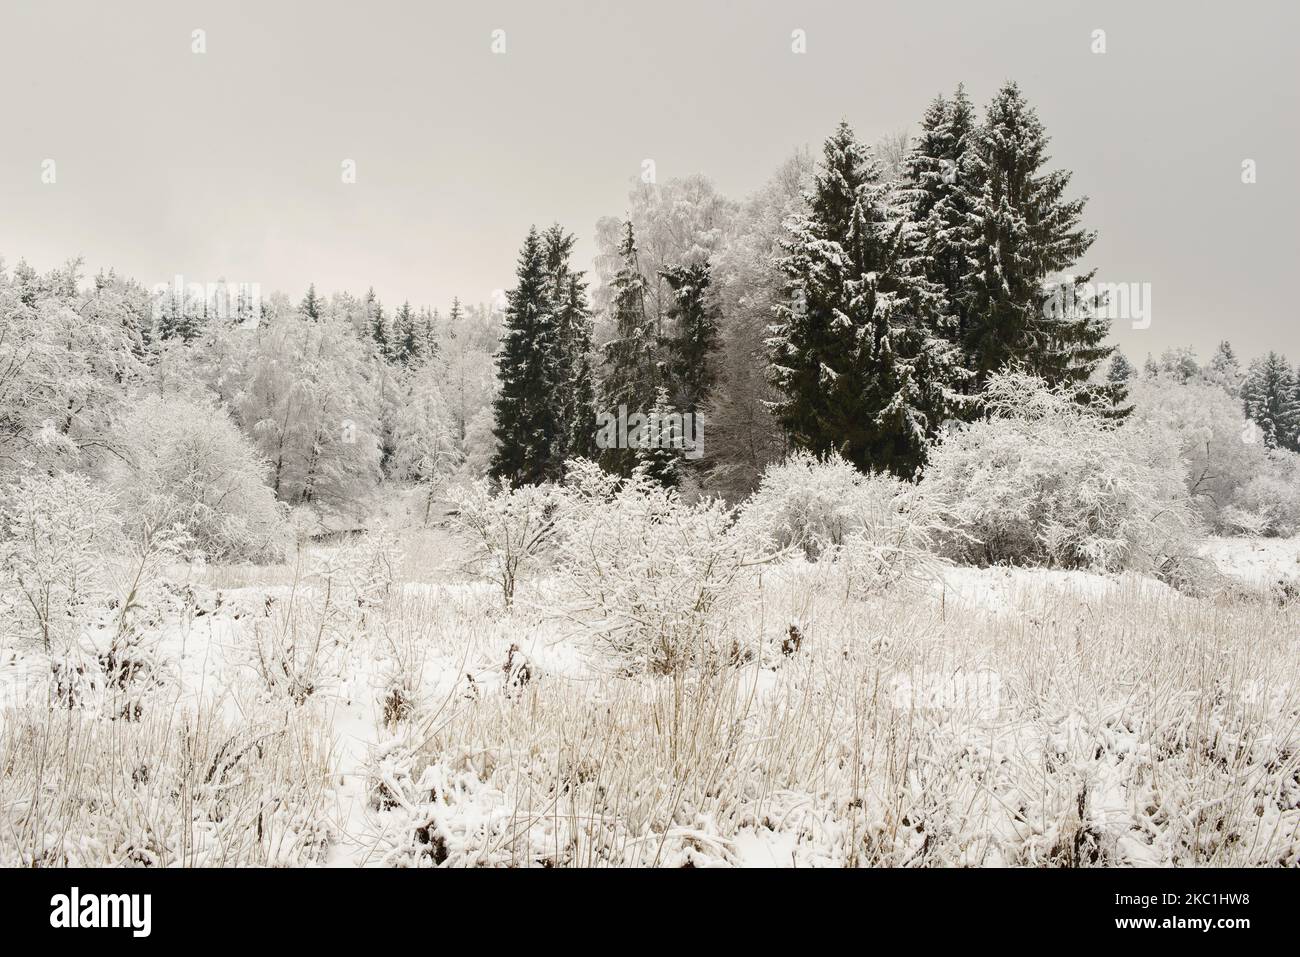 Winterlandschaft am Ufer eines kleinen Flusses, Büsche und Bäume mit Schnee bedeckt. Stockfoto